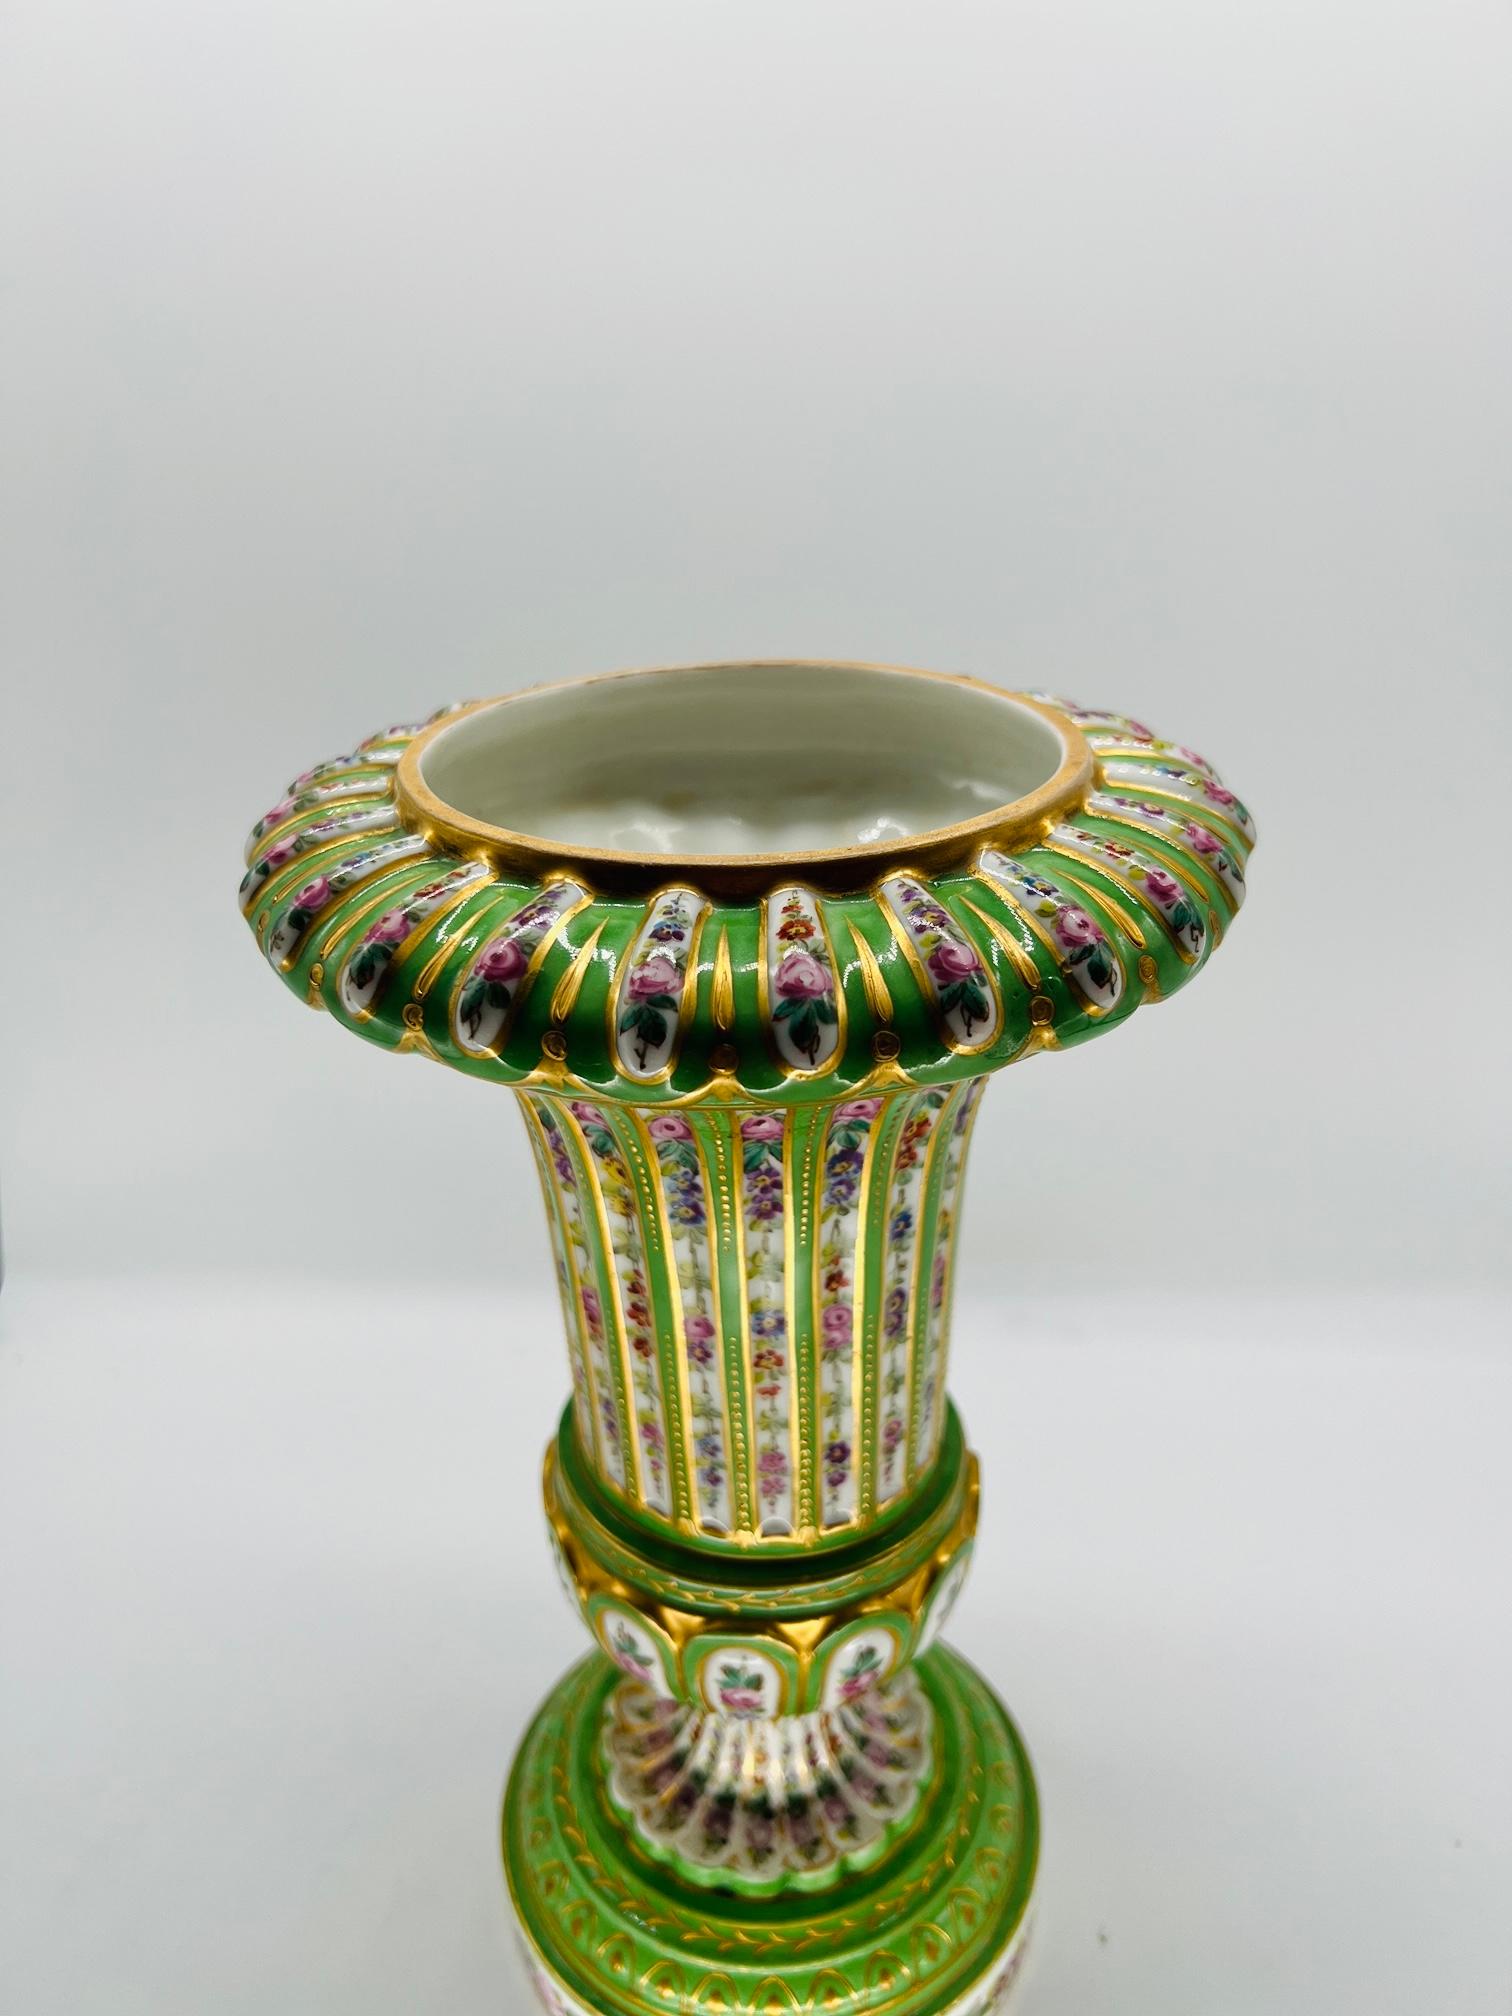 Sèvres (française, fondée en 1756), marquée pour 1770.

Urne ou vase ancien en porcelaine française décoré d'une base en porcelaine verte, de fenêtres à fond blanc ornées de lourdes décorations florales et séparées par un fin travail de perles d'or.